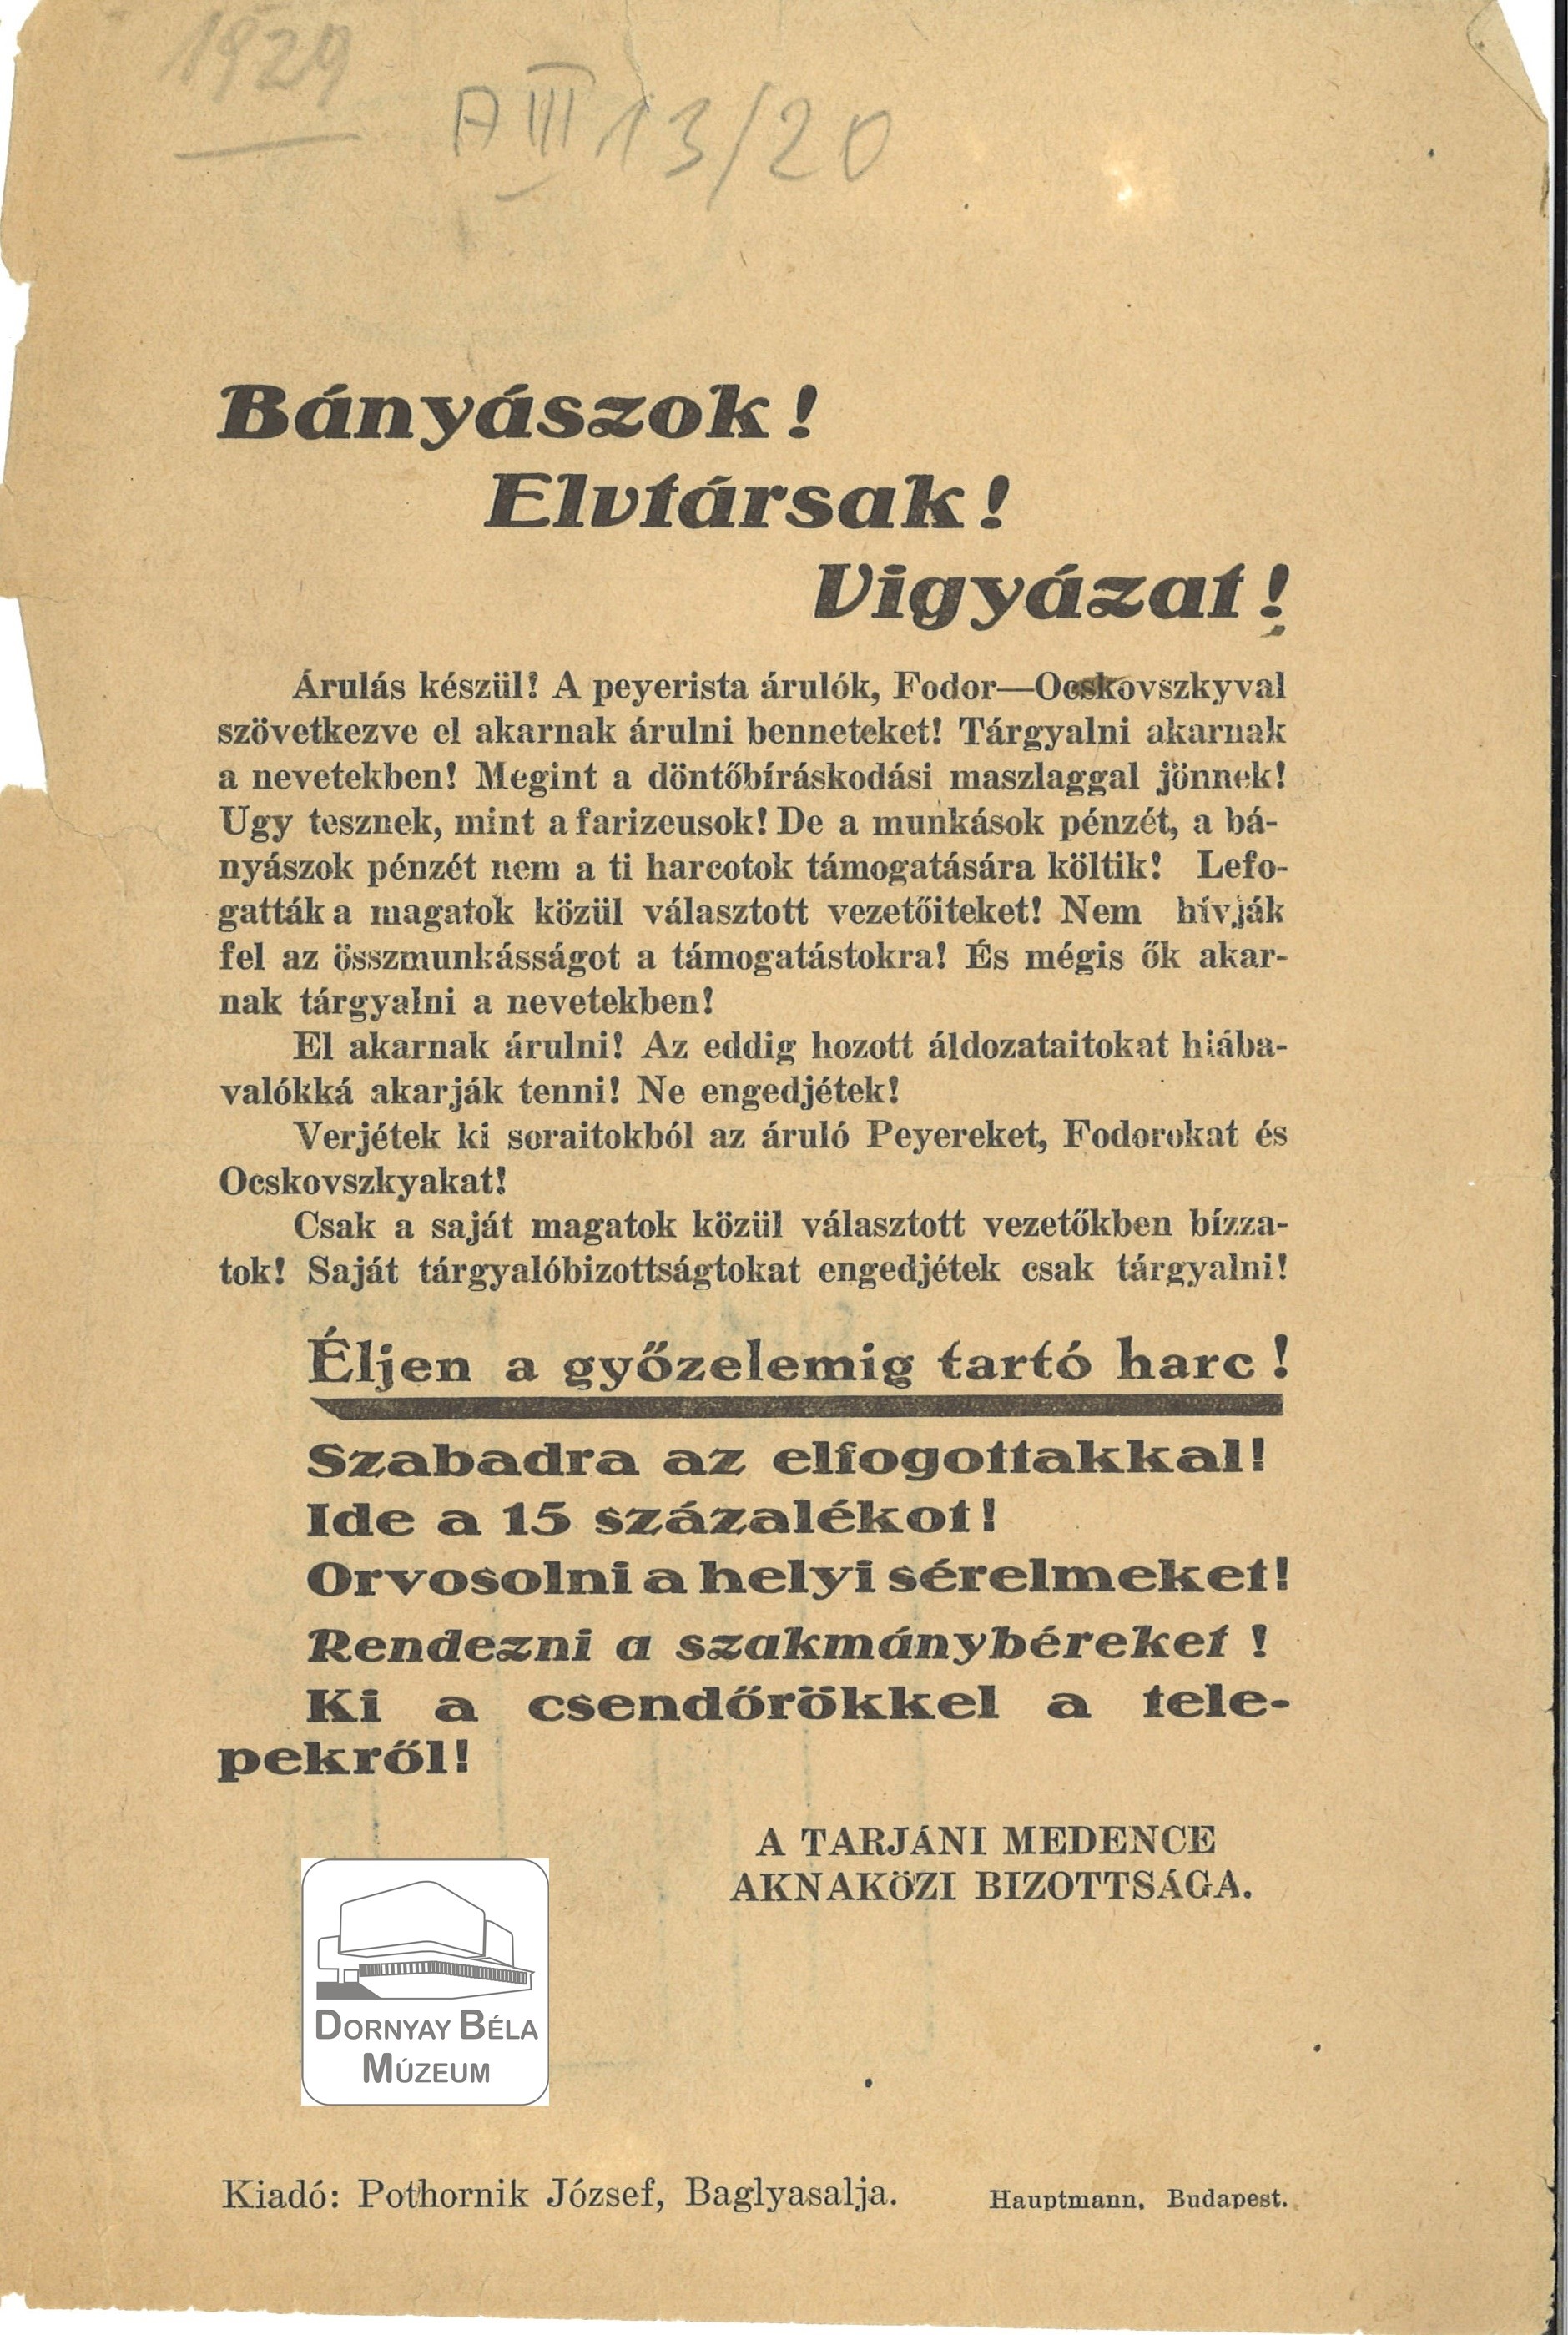 A tarjáni medence aknaközi bizottságának felhívása a bányászokhoz (Dornyay Béla Múzeum, Salgótarján CC BY-NC-SA)